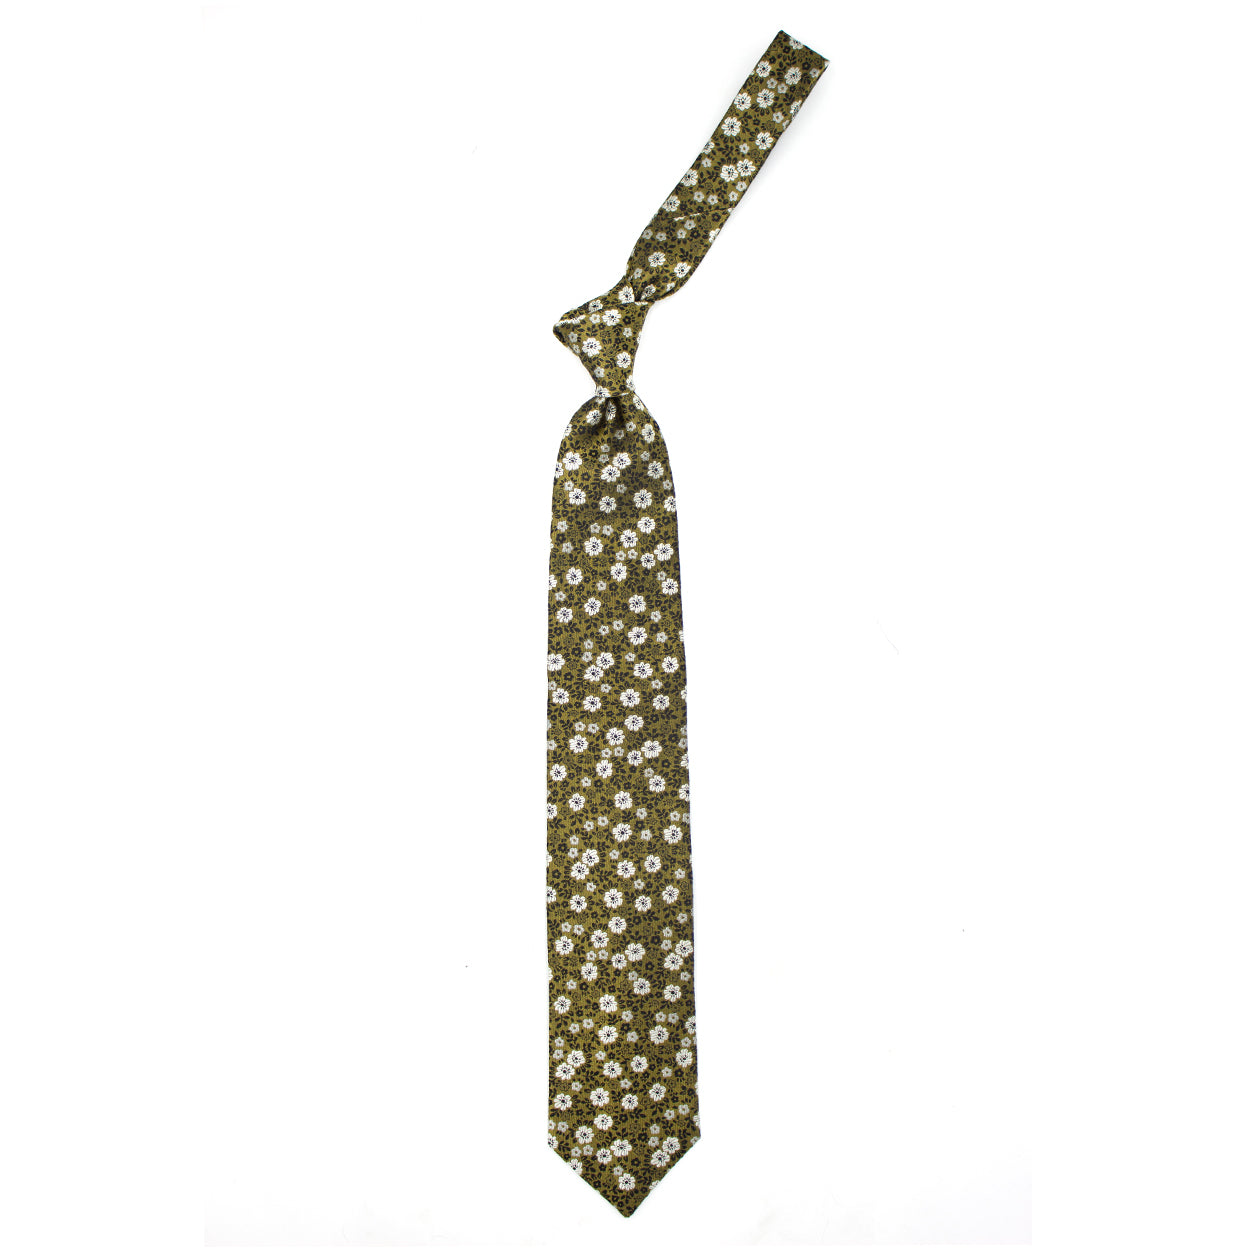 Cravatta verde con fiori bianchi e marroni